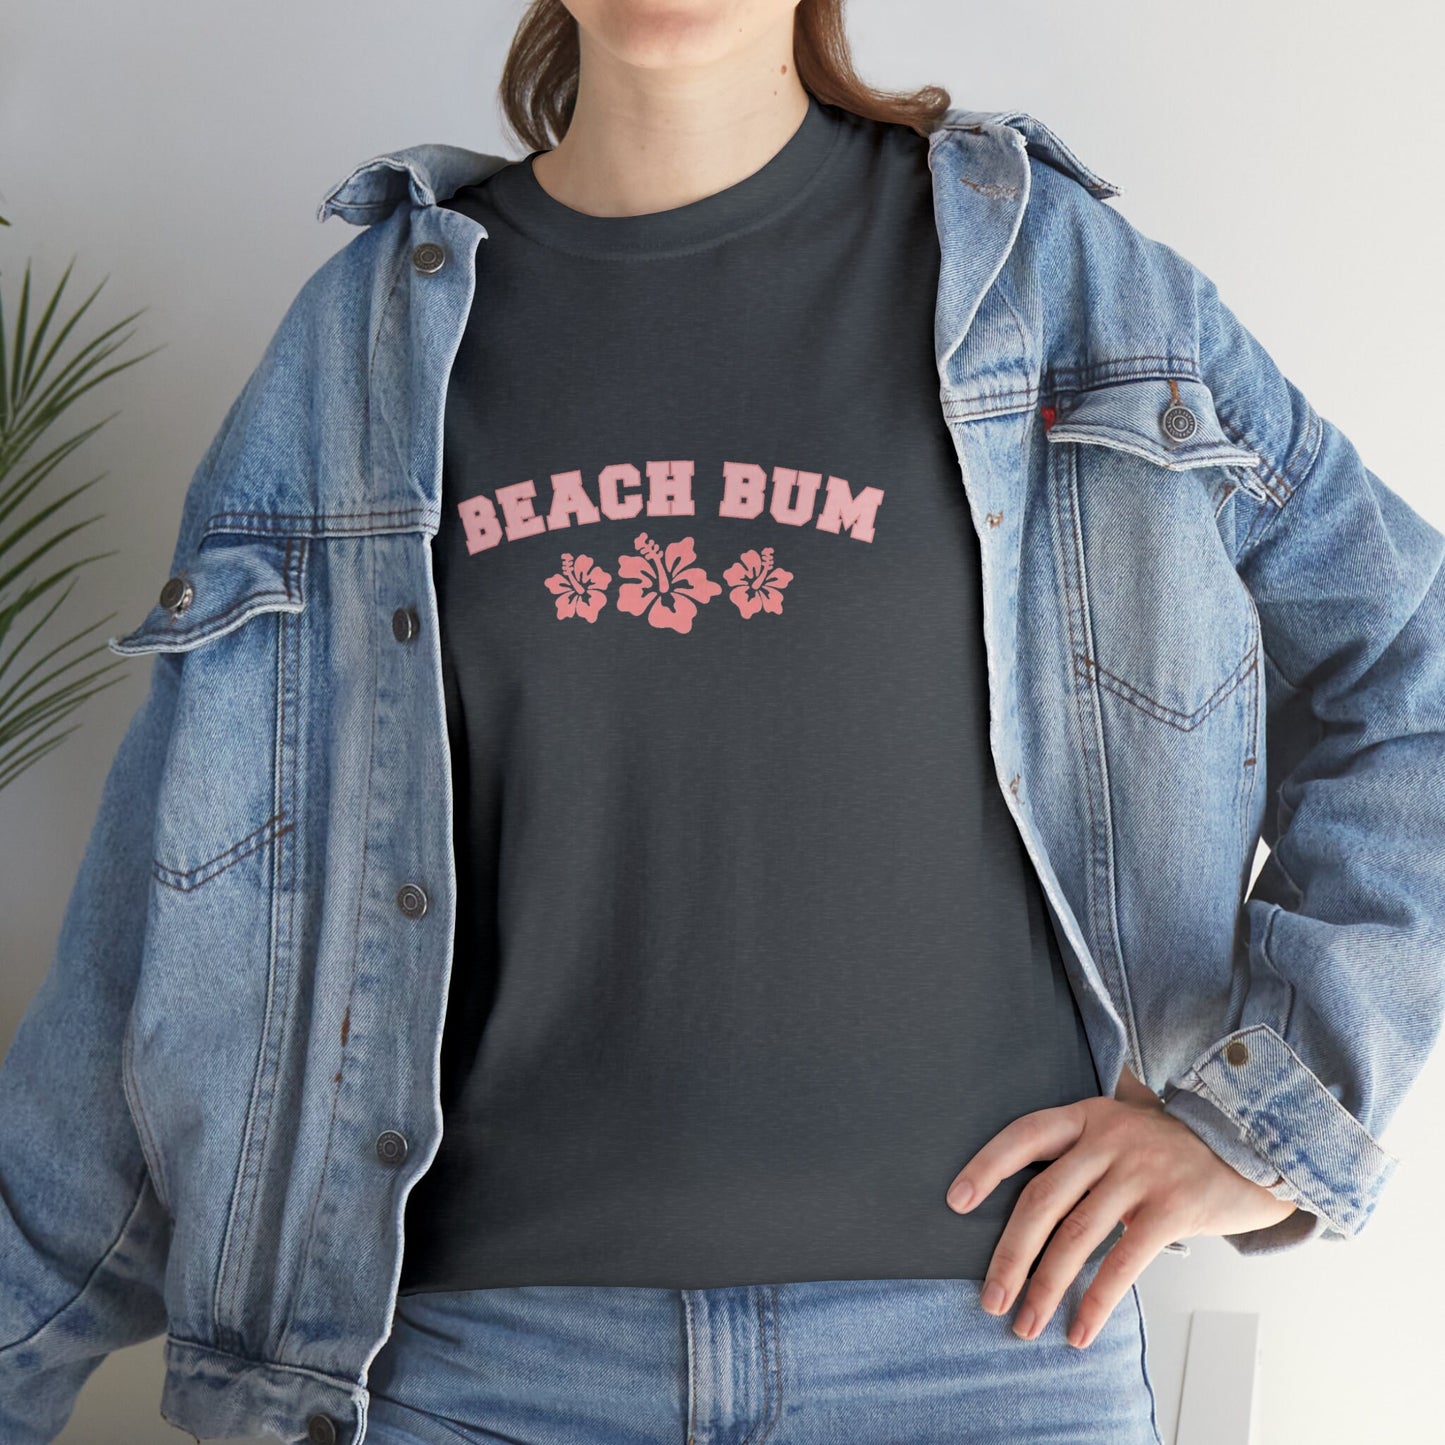 Beach Bum T-Shirt, Vacation Clothes, Hawaiian Plumeria Top